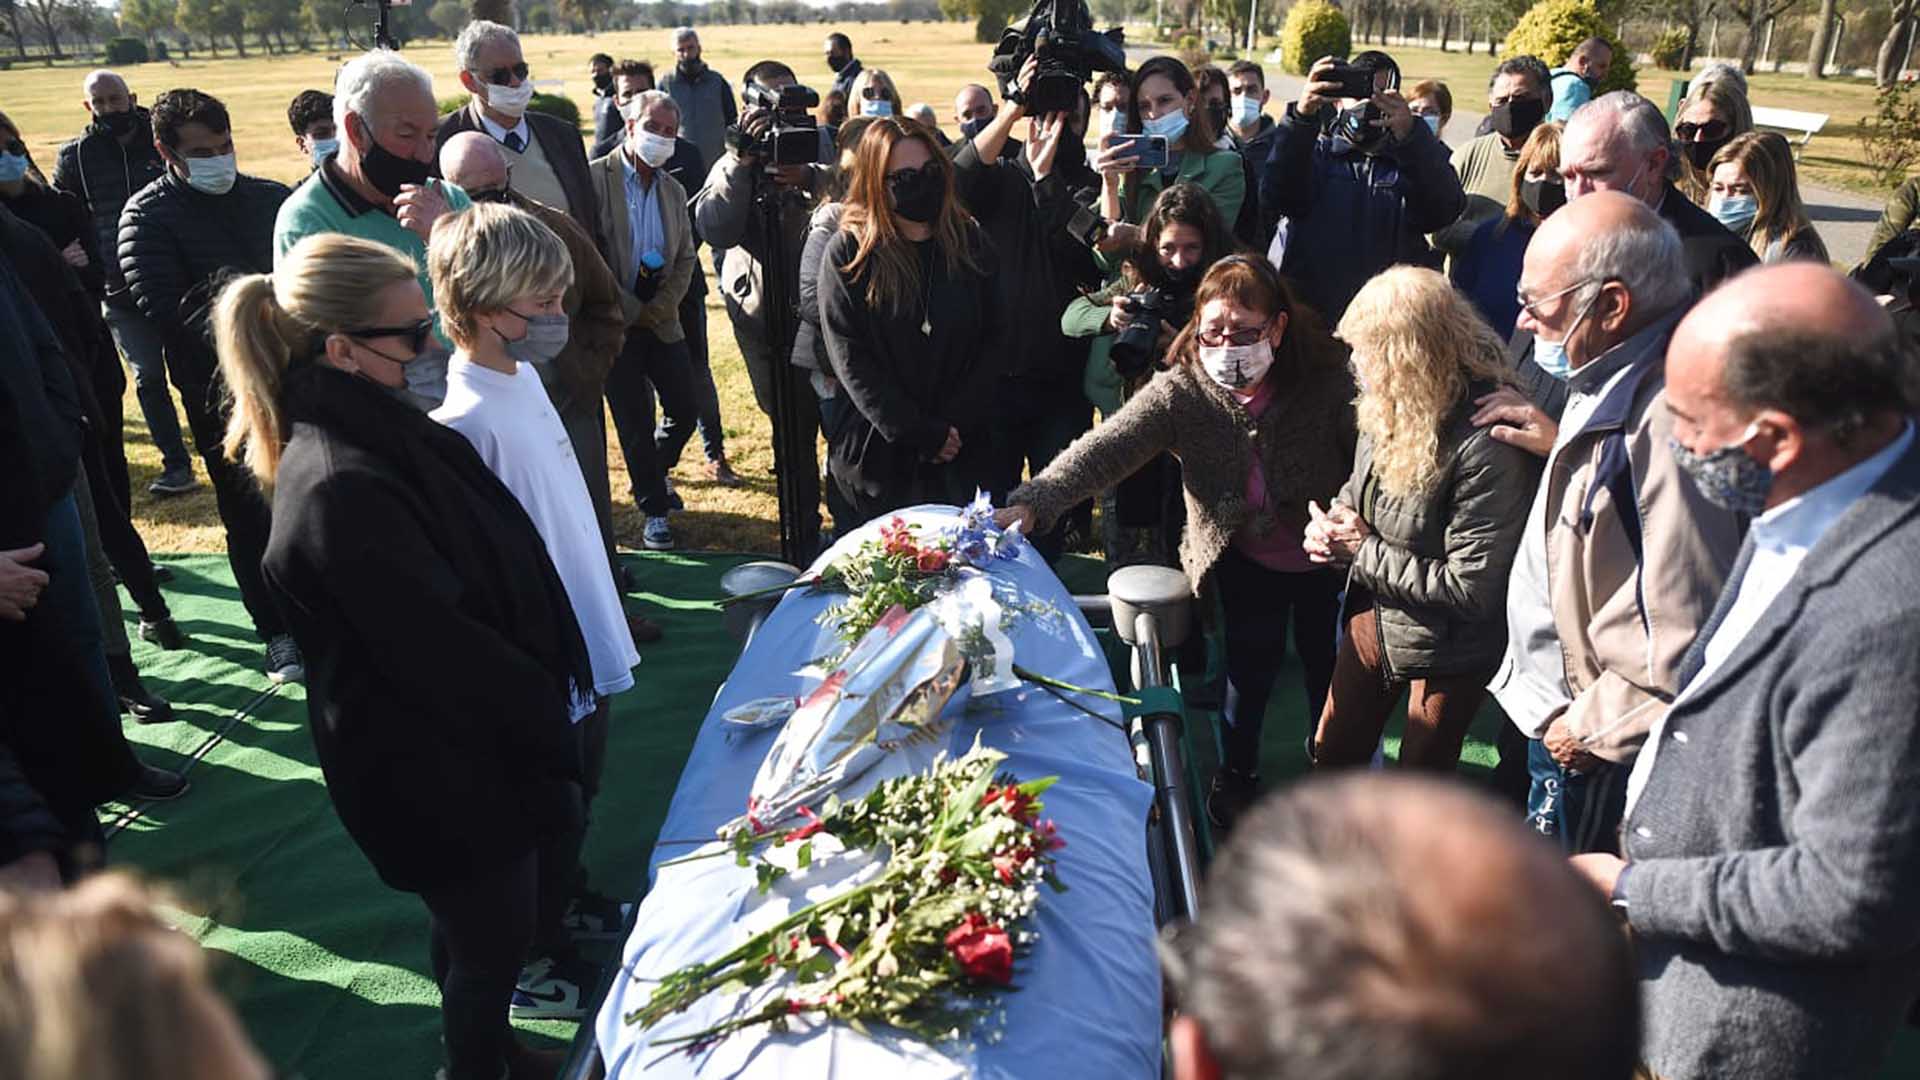 El féretro, cubierto por una bandera argentina, fue trasladado hasta el cementerio Lar de Paz, situado en el kilómetro 12,5 de la ruta provincial 2, luego de haber sido velado en una sala del macrocentro de la capital